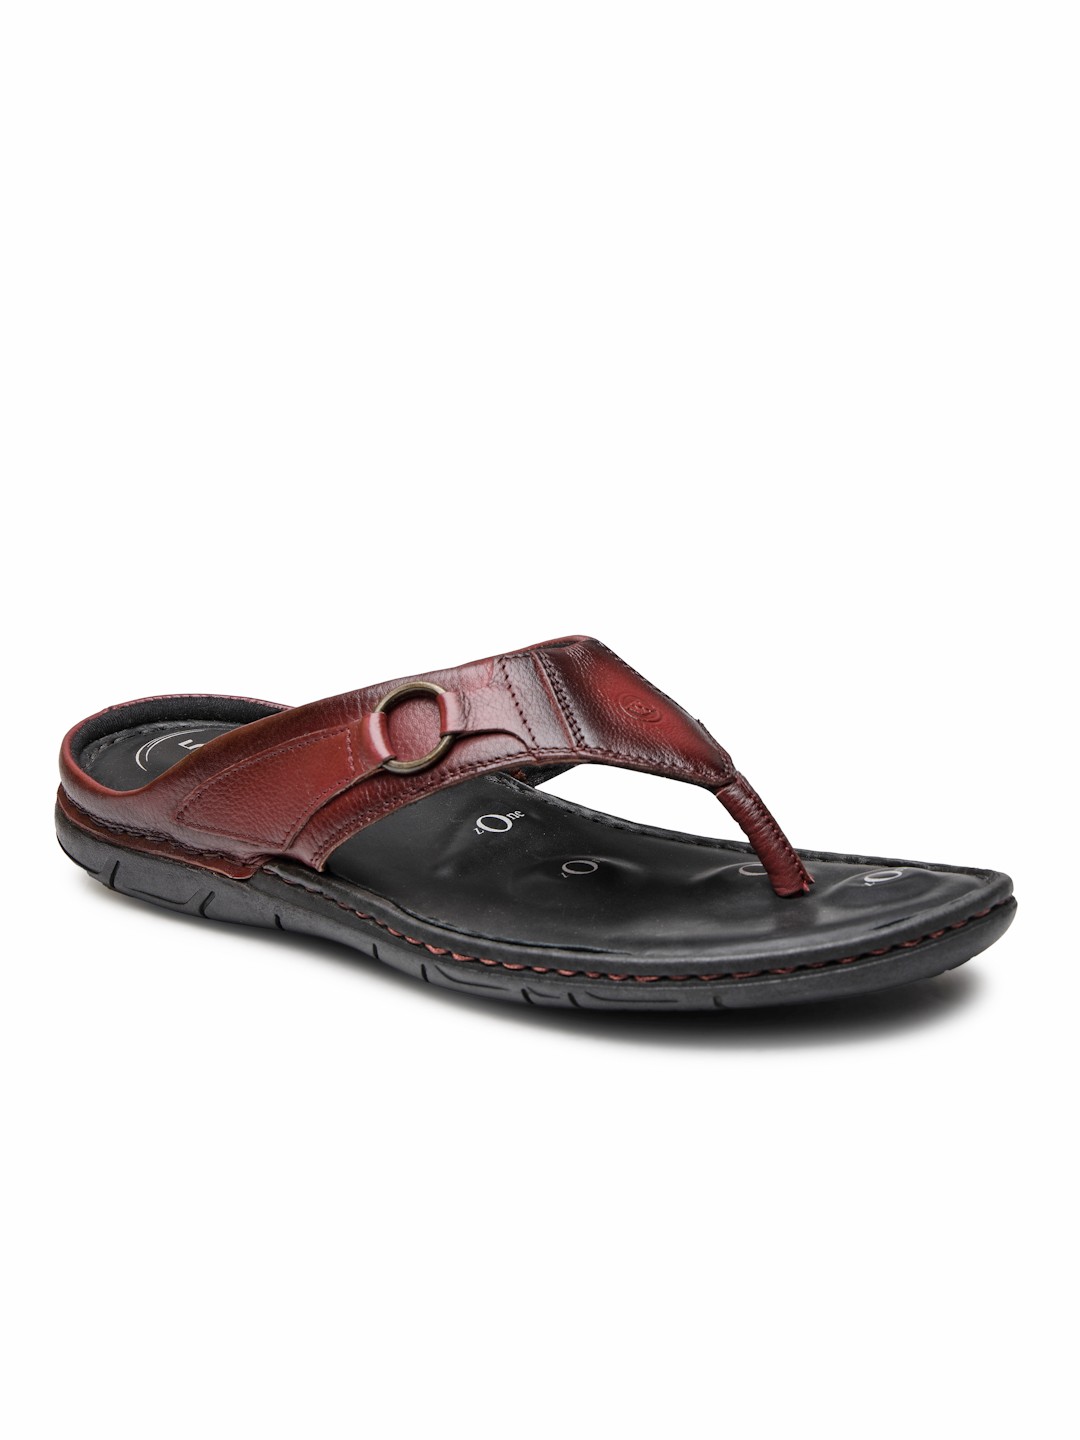 Buy Von Wellx Germany Comfort Men's Brown Slippers Riley Online in Bhubaneswar